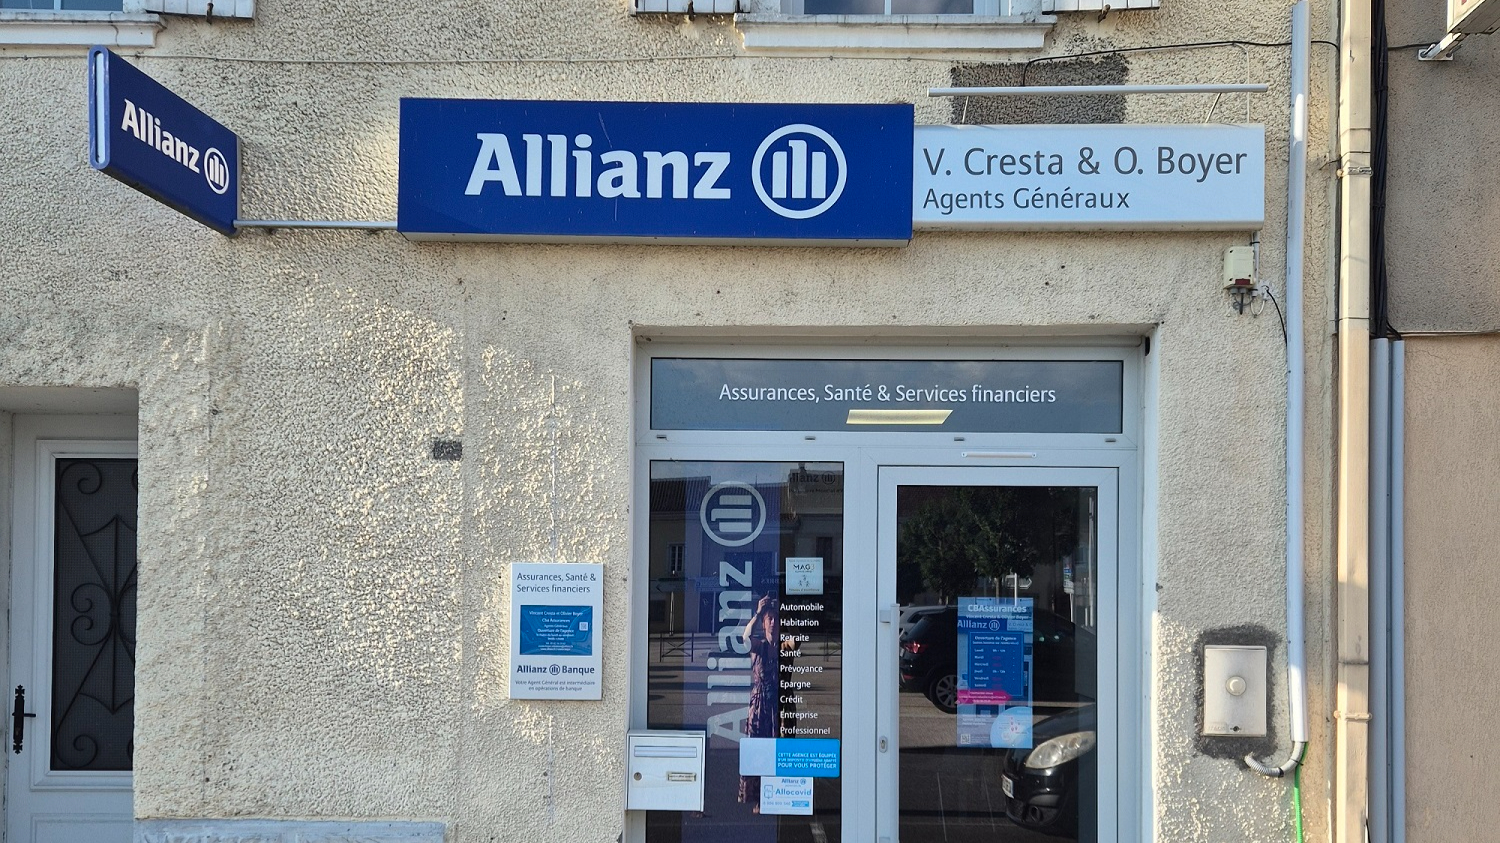 Allianz RABASTENS DE BIGORRE - Vincent CRESTA & Olivier BOYER